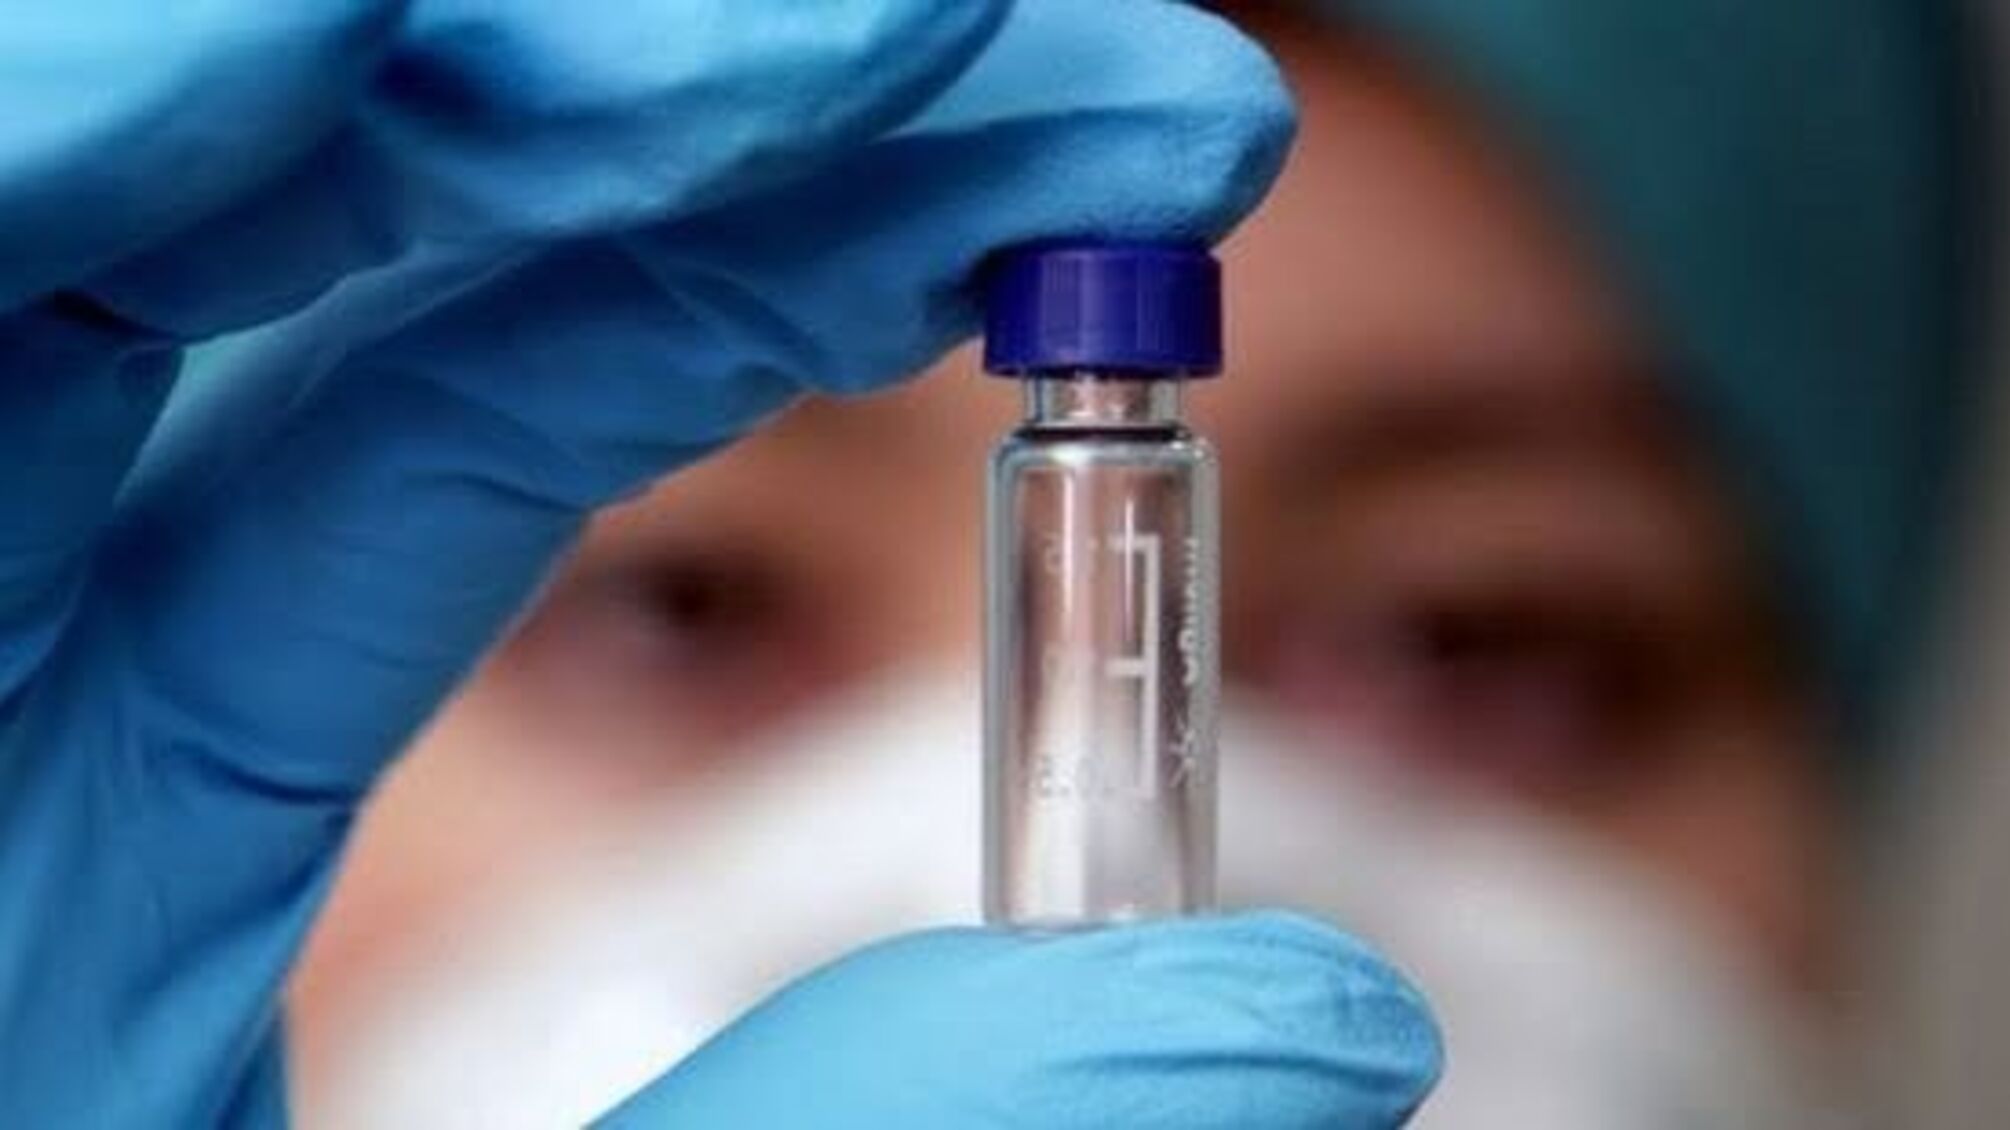 17 вакцин від коронавірусу тестують на людях у світі - ВООЗ